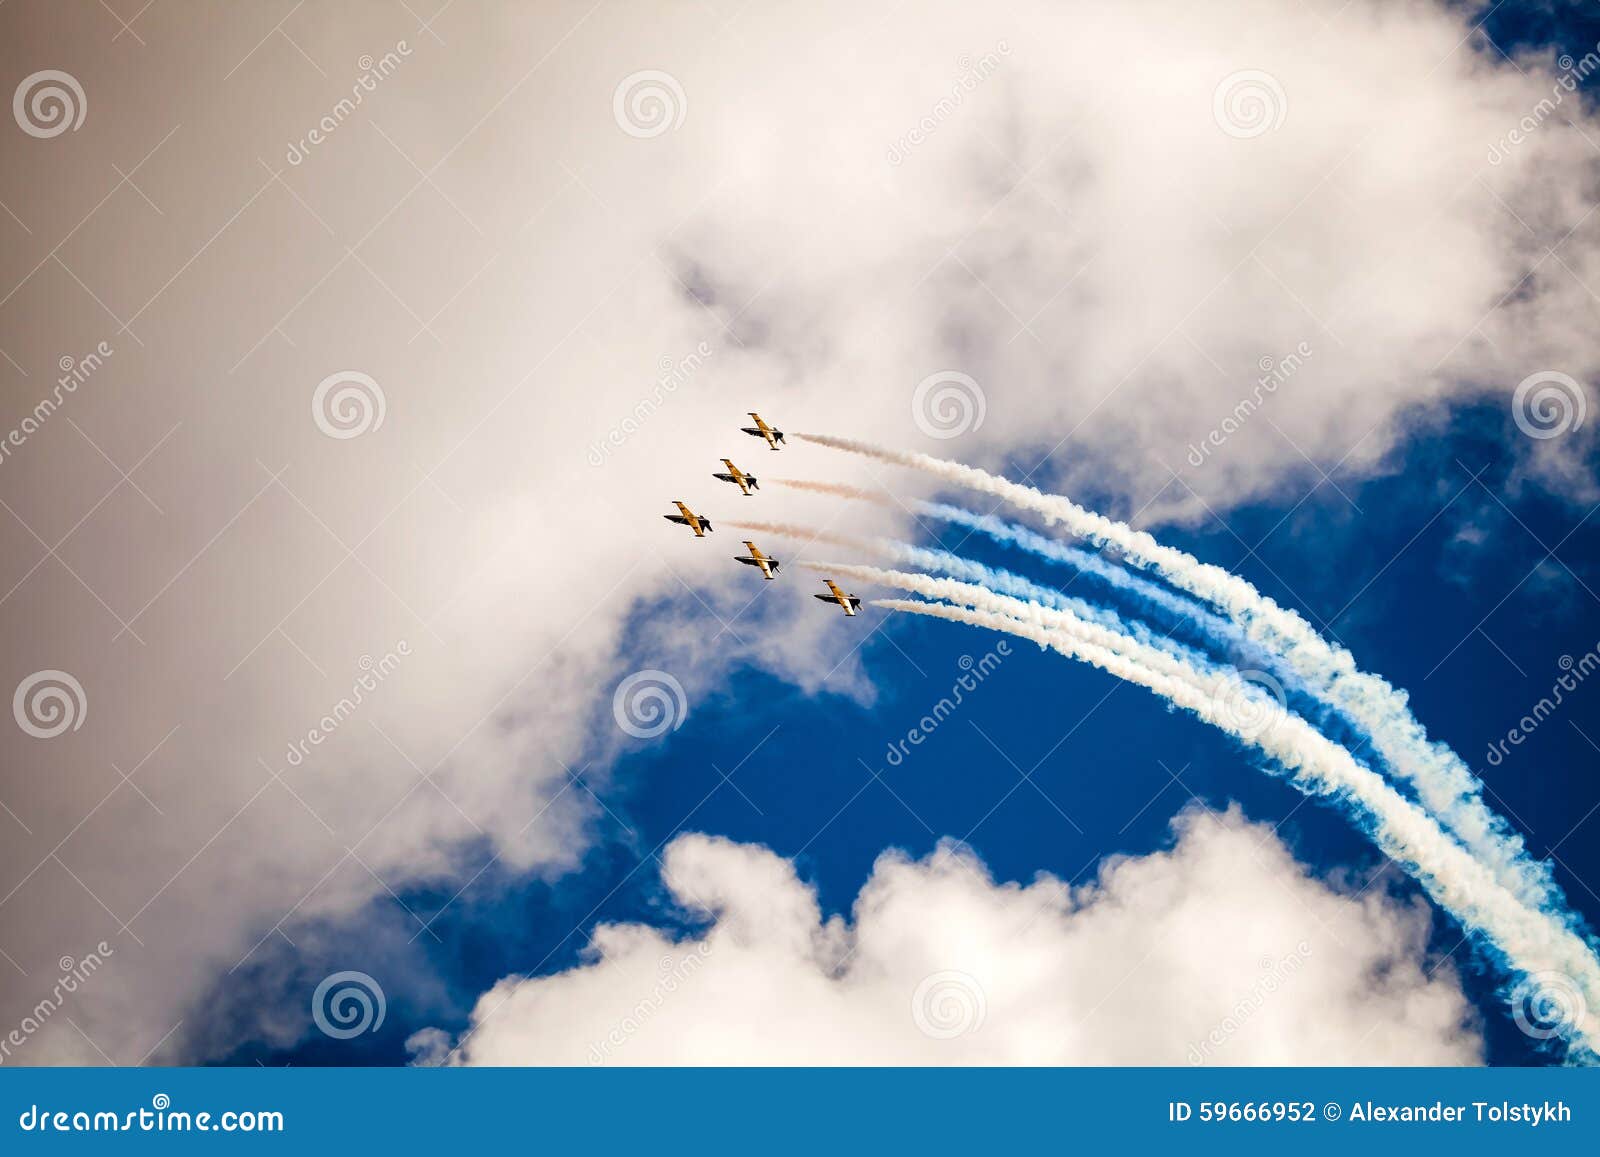 russ aerobatic team on maks 2015